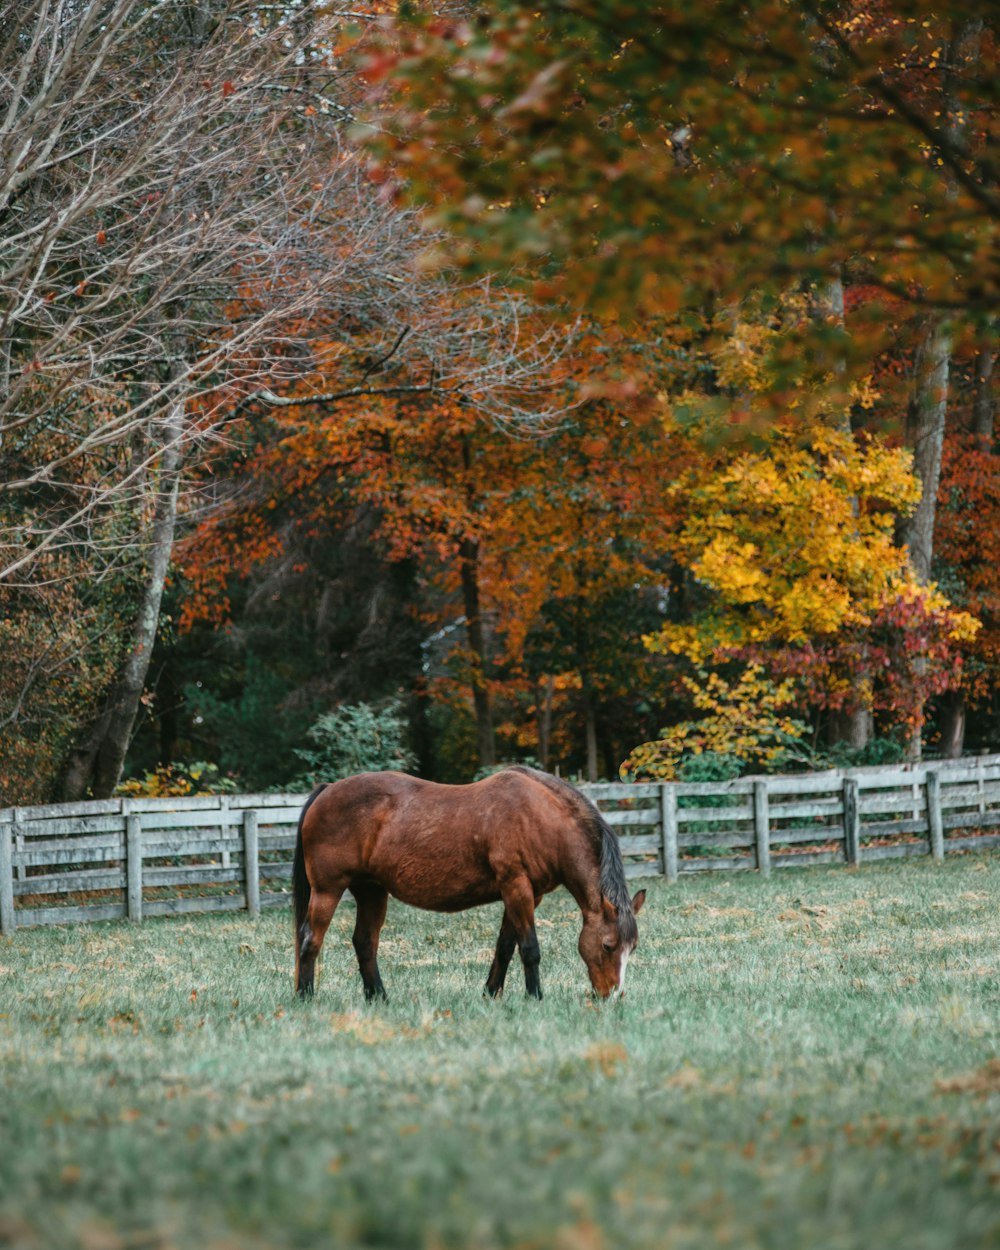 Cavallo marrone sulla staccionata di legno bianca vicino agli alberi marroni durante il giorno